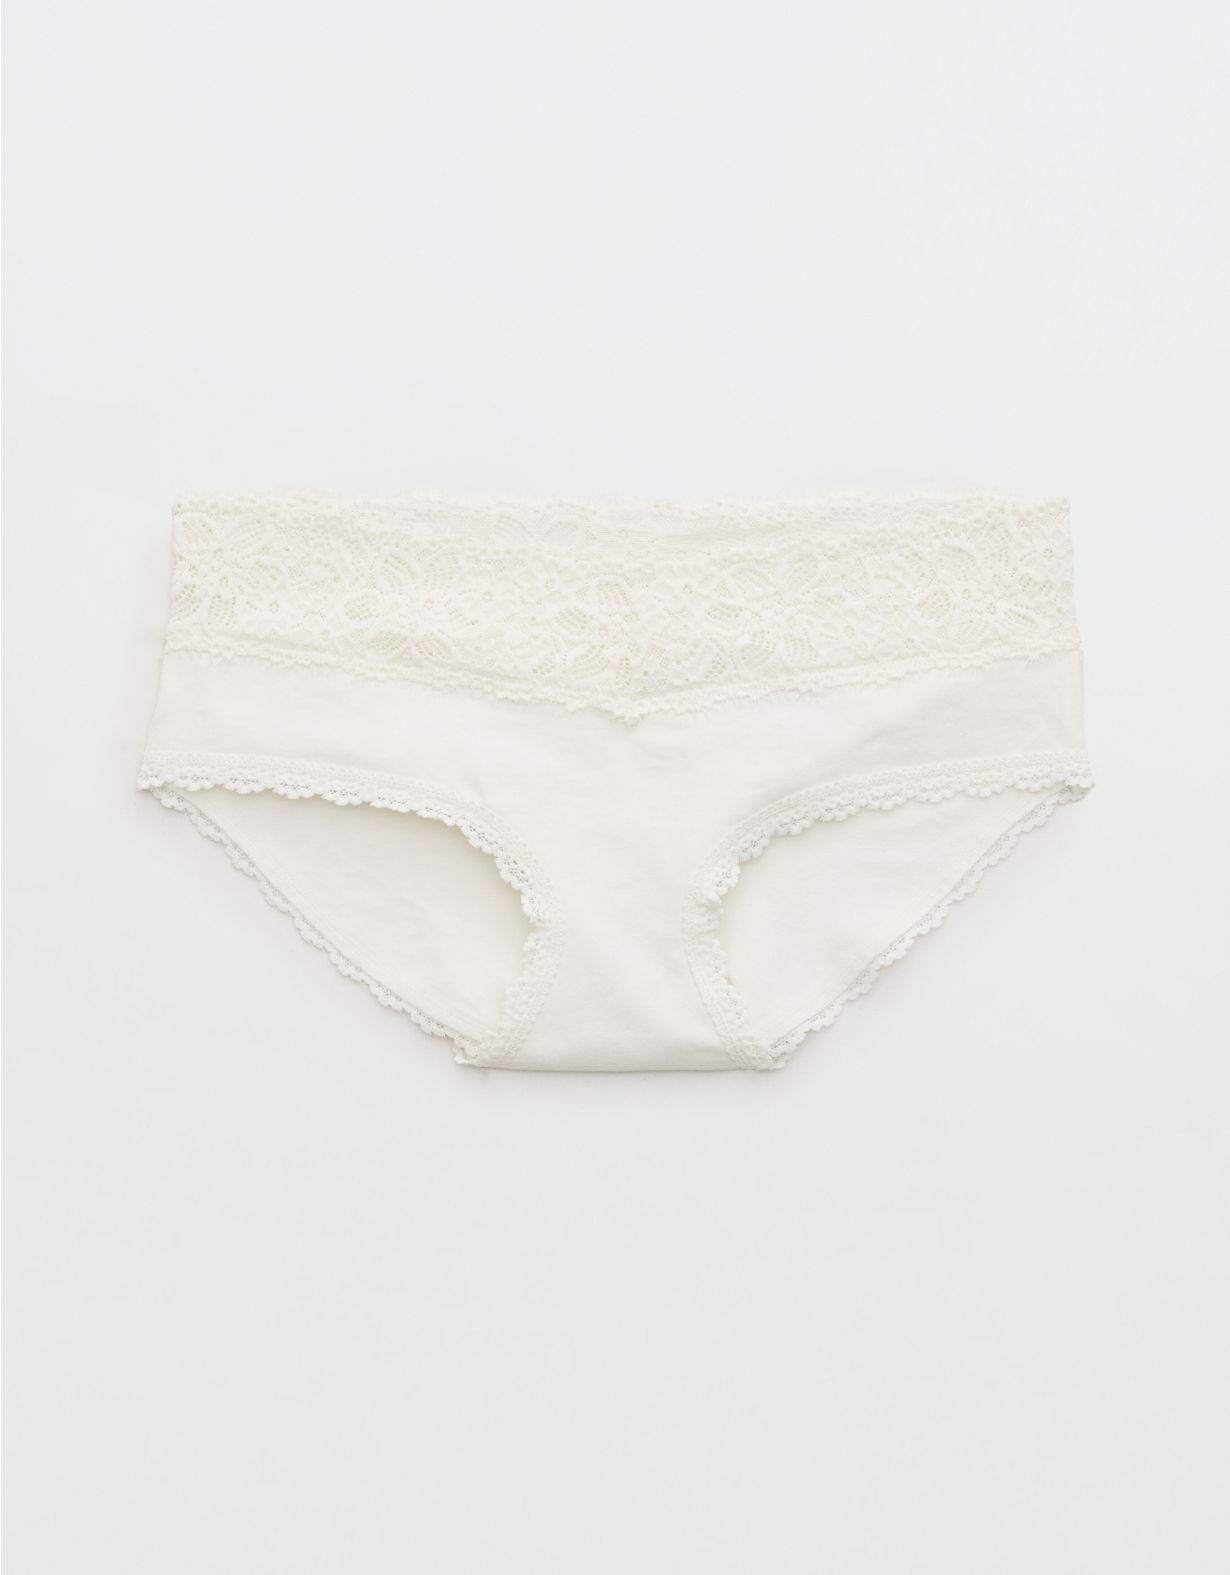 Superchill Cotton Eyelash Lace Boybrief Underwear